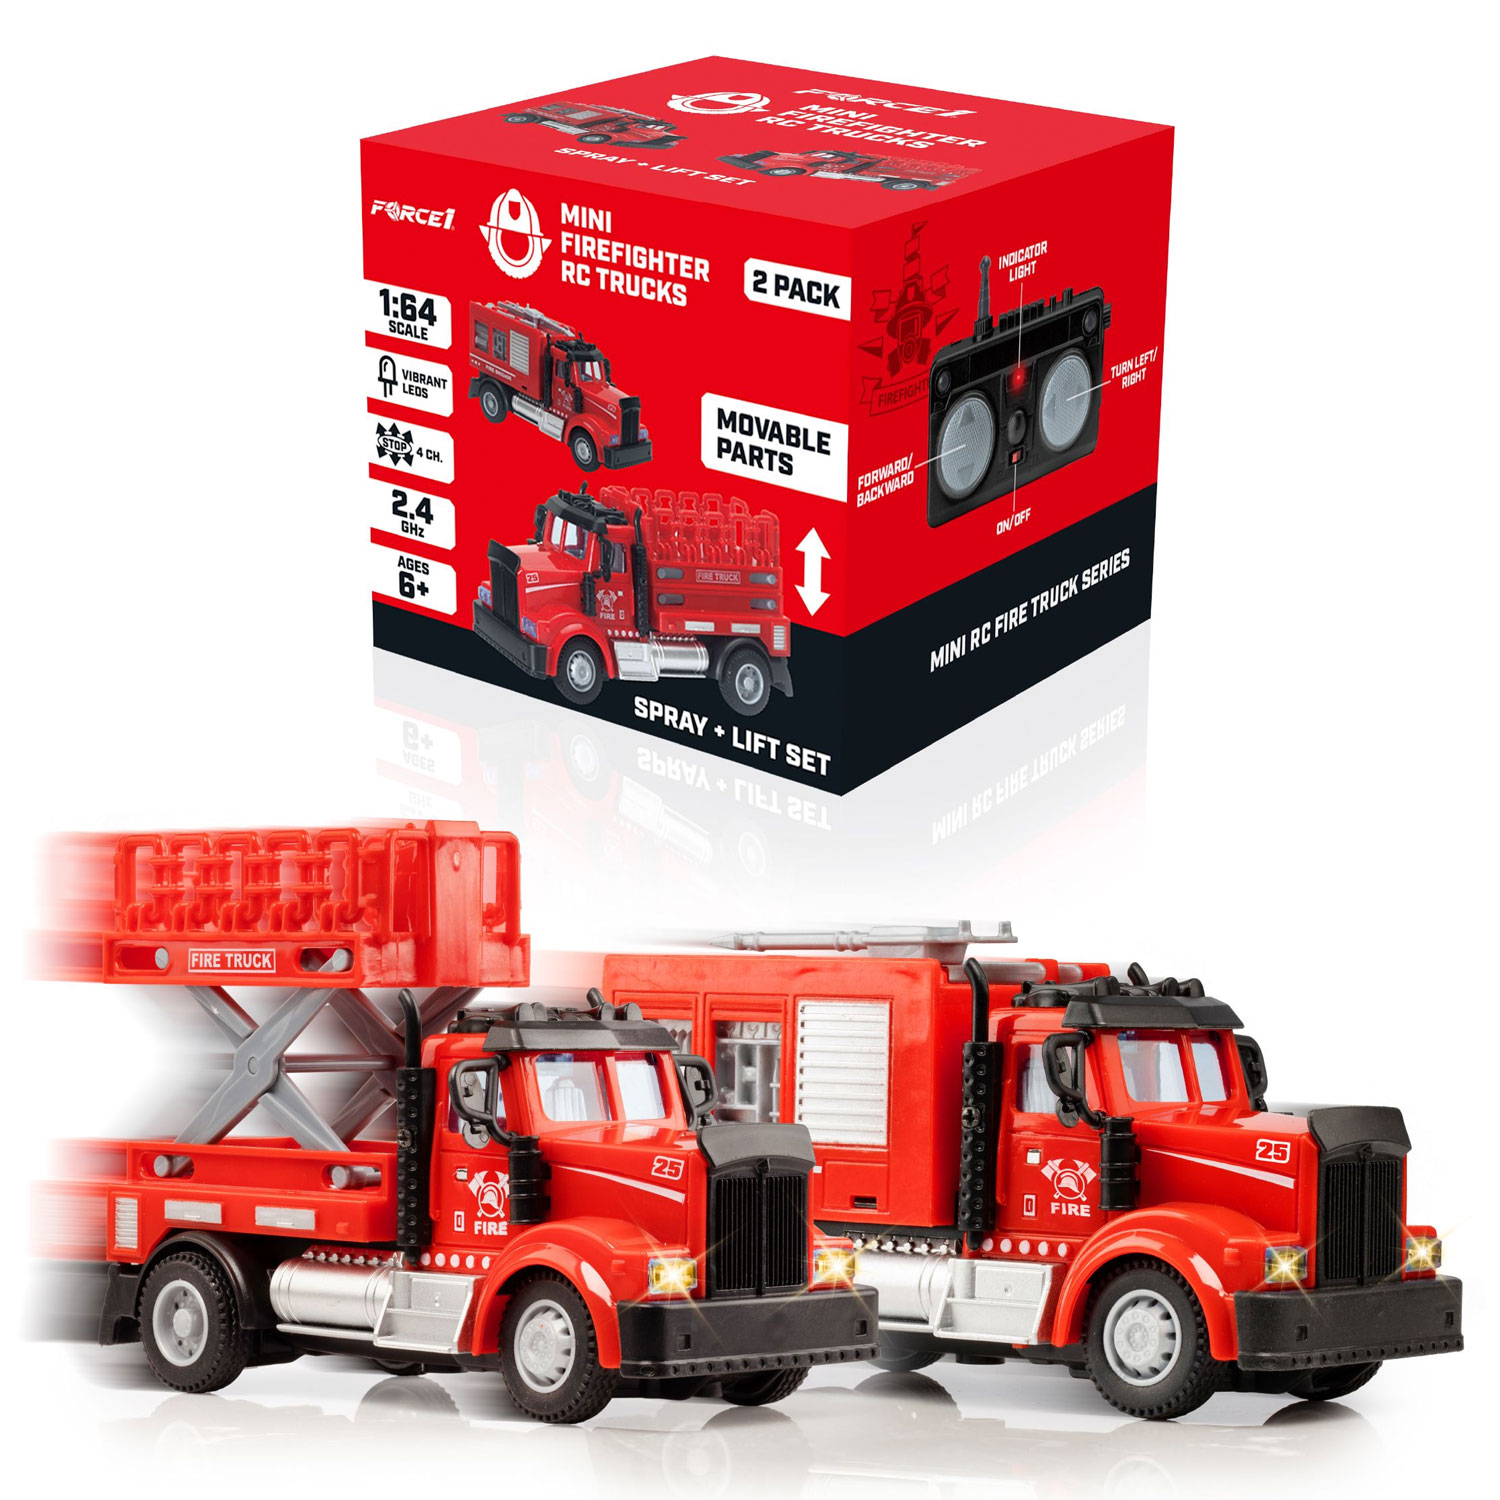 Mini Firefighter Rc Trucks - Spray + Lift And  Tank + Boom